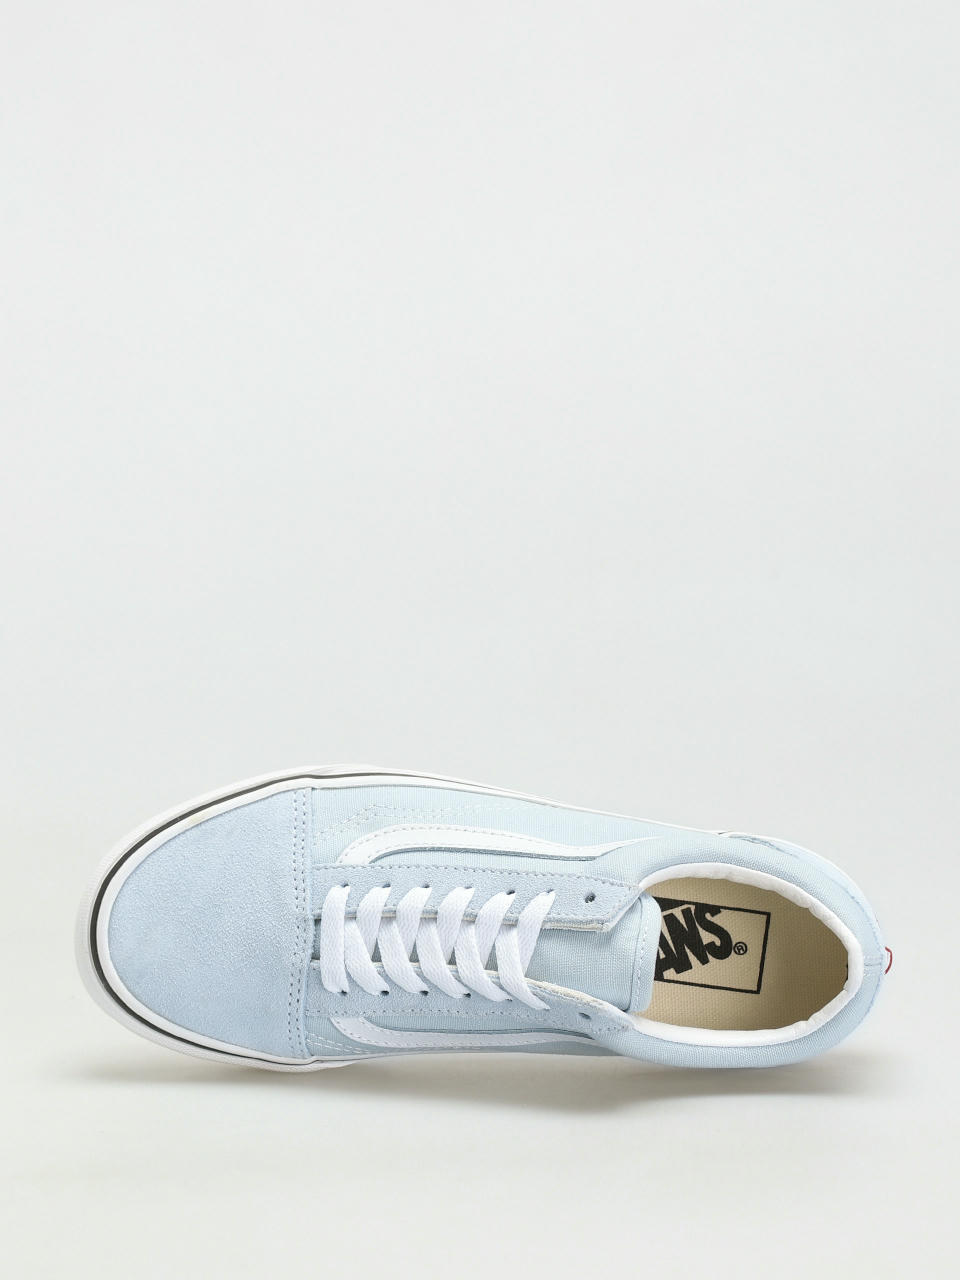 spons globaal Beukende Vans Shoes Old Skool (baby blue/true white)